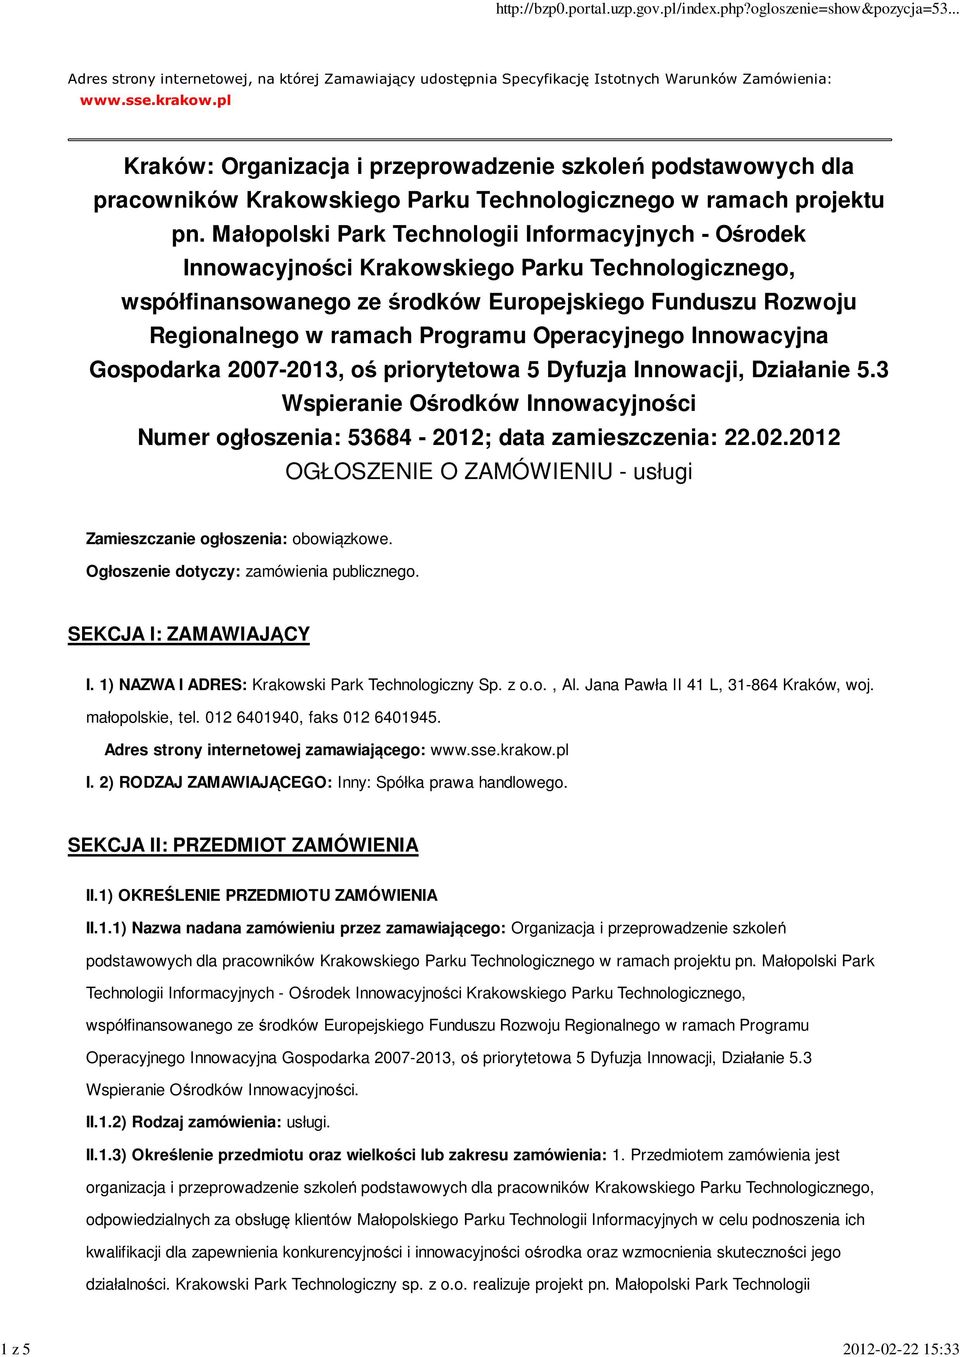 Małopolski Park Technologii Informacyjnych - Ośrodek Innowacyjności Krakowskiego Parku Technologicznego, współfinansowanego ze środków Europejskiego Funduszu Rozwoju Regionalnego w ramach Programu